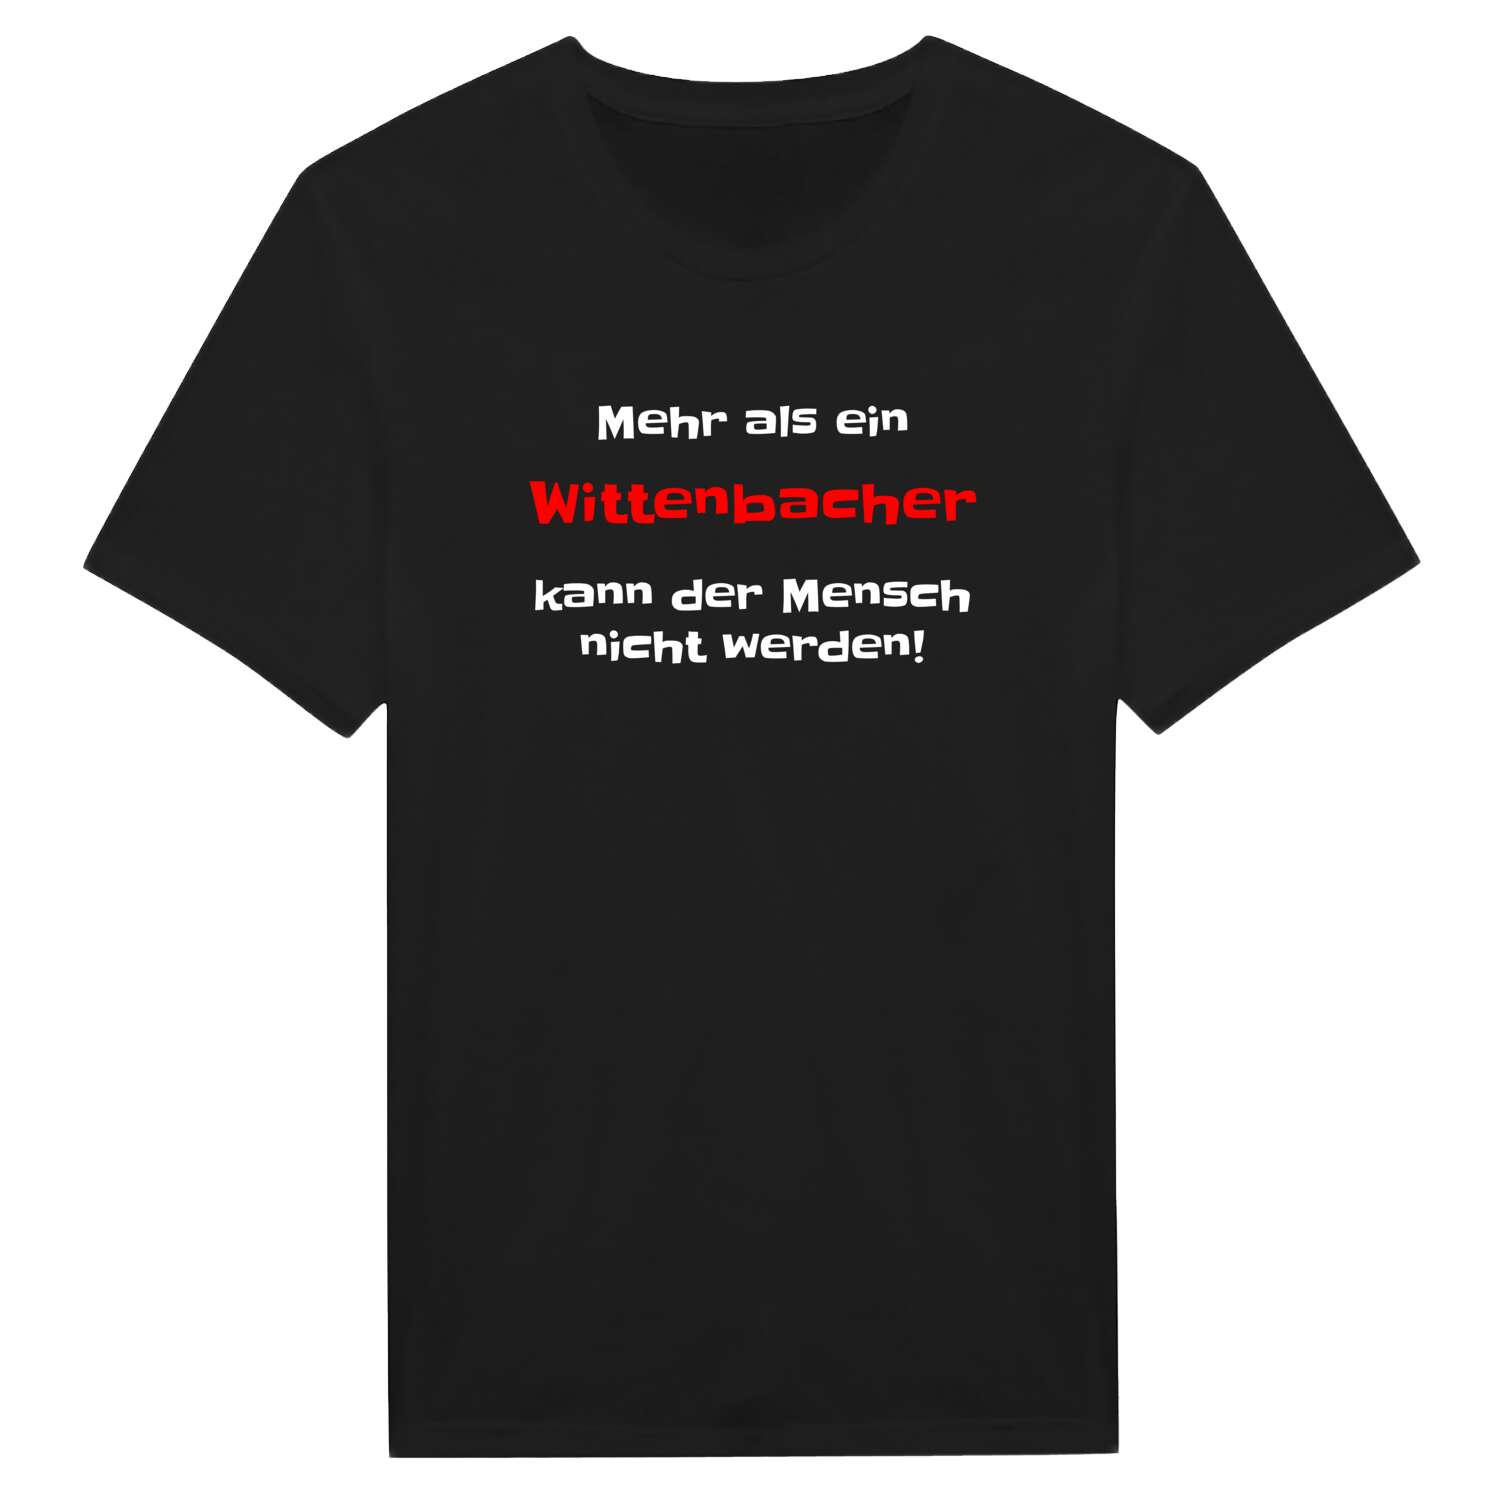 Wittenbach T-Shirt »Mehr als ein«